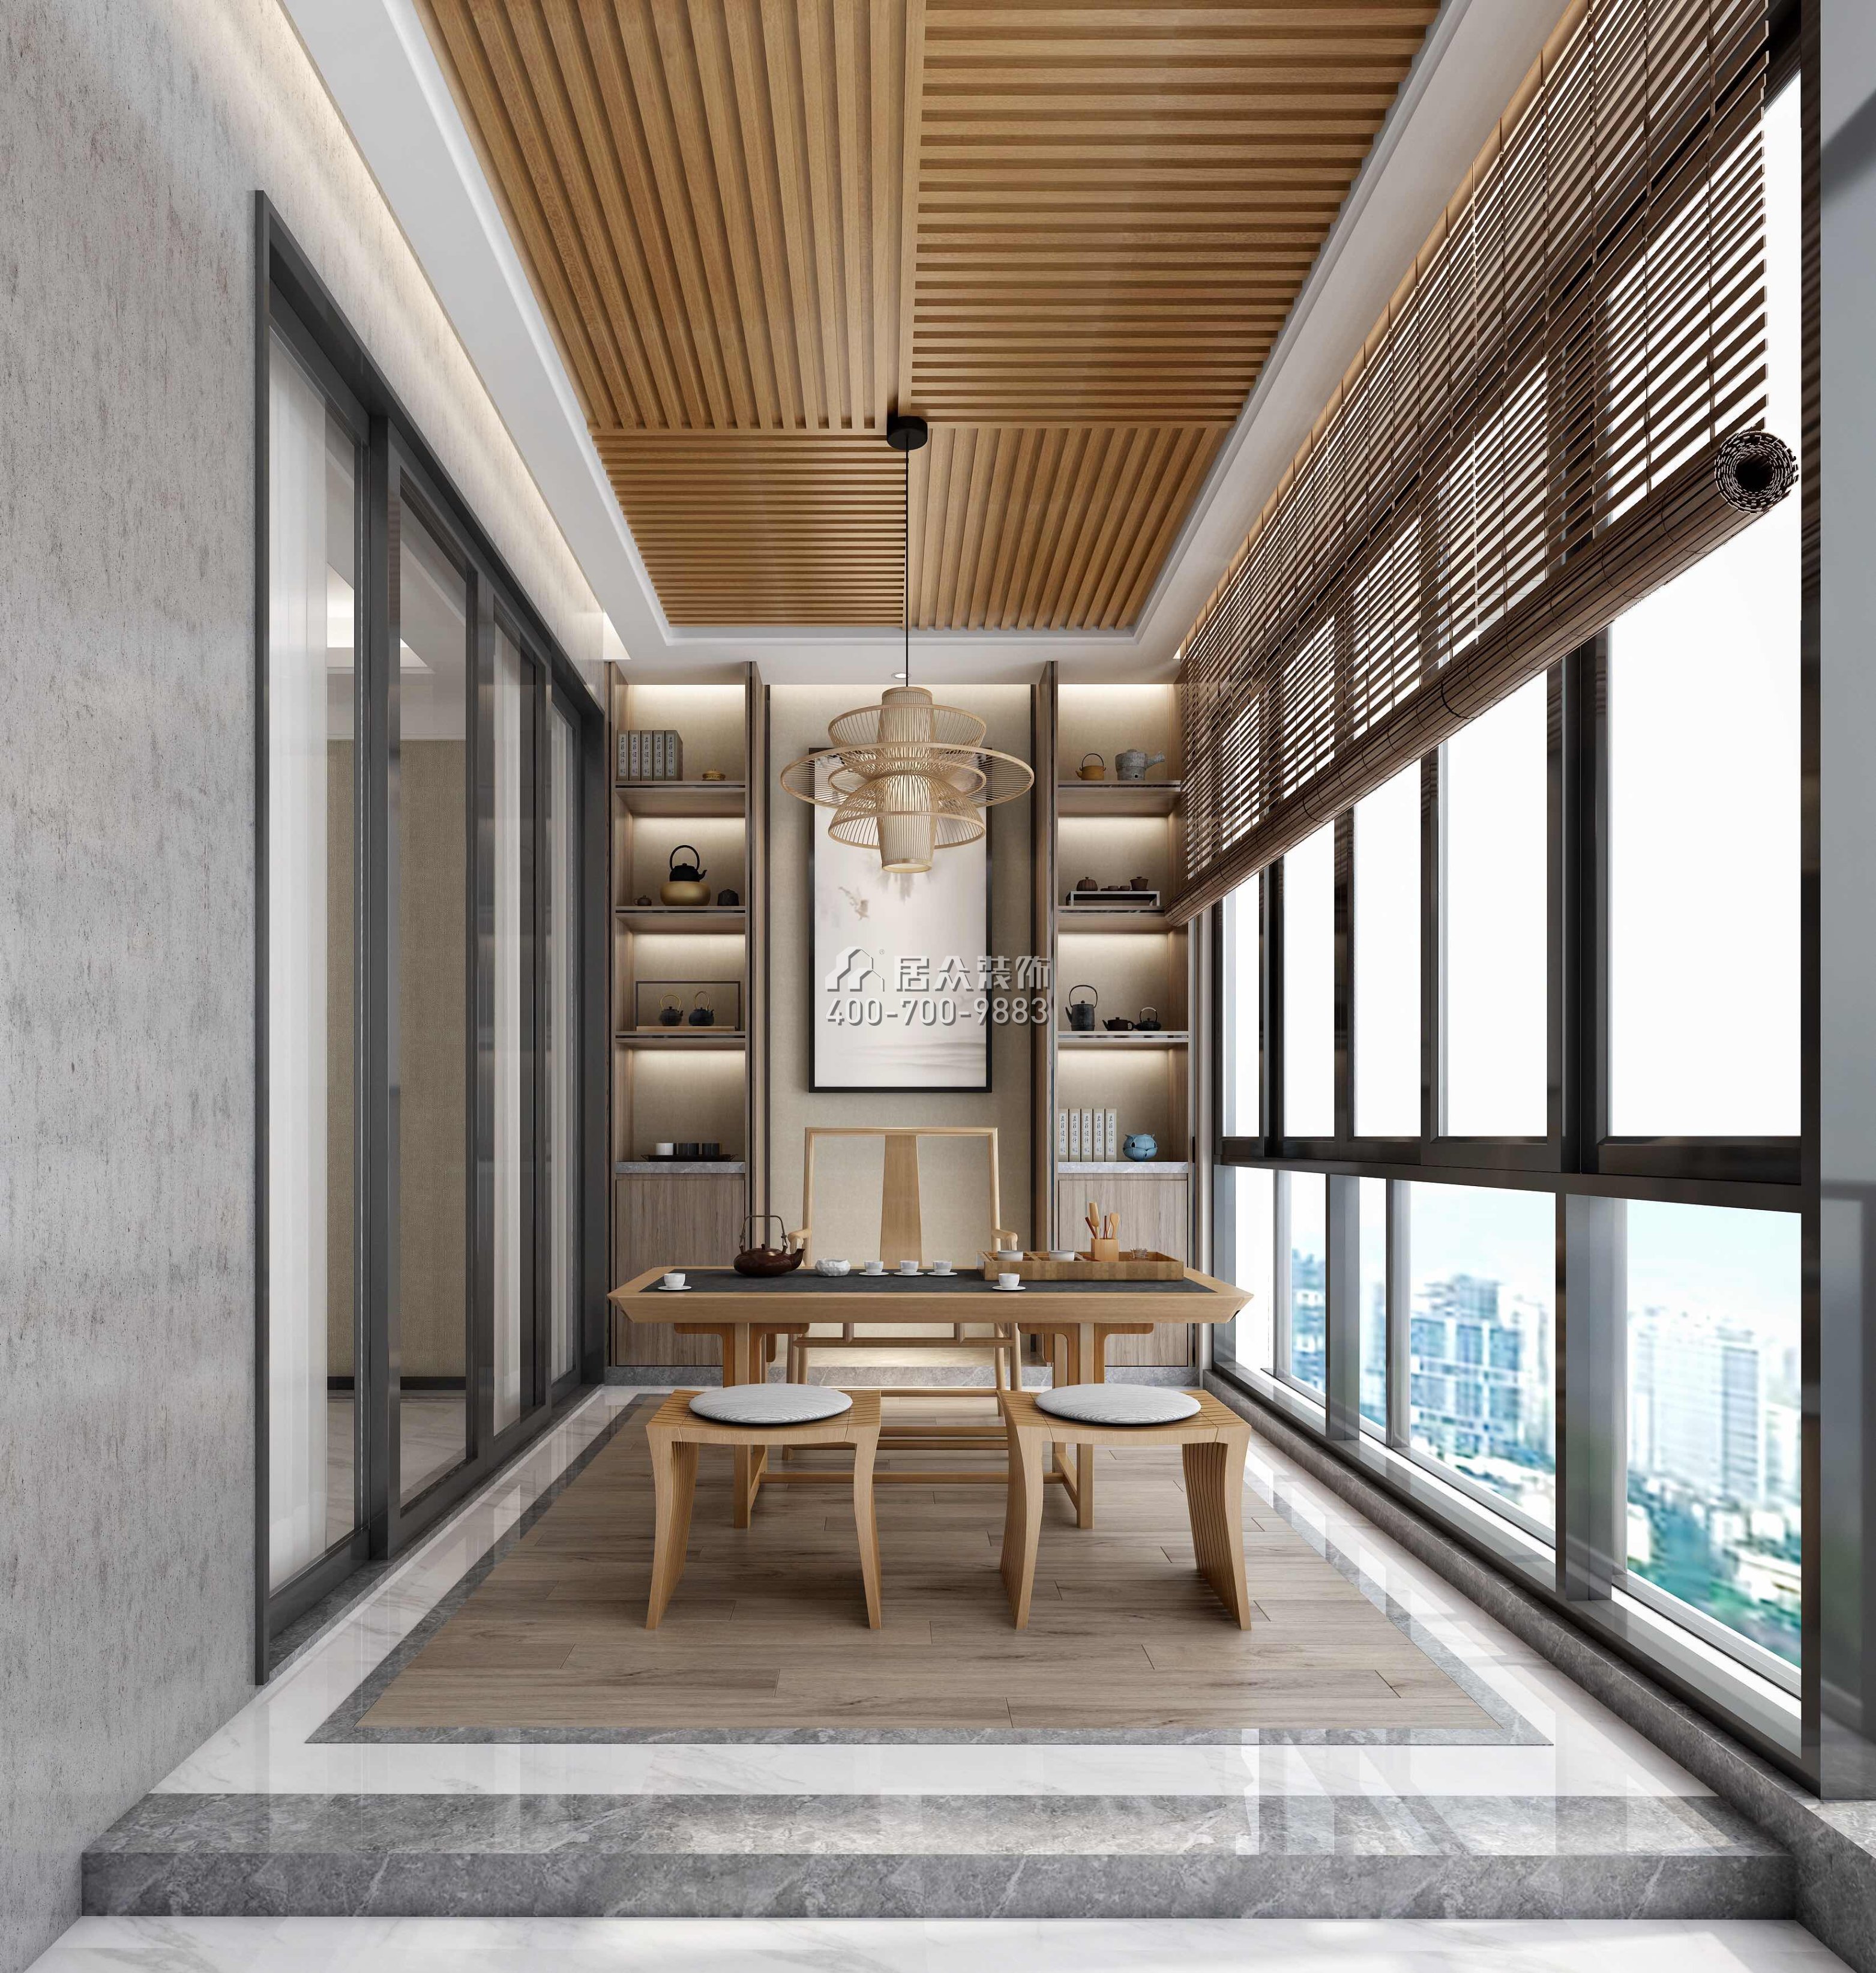 锦绣山河三期350平方米混搭风格平层户型茶室装修效果图